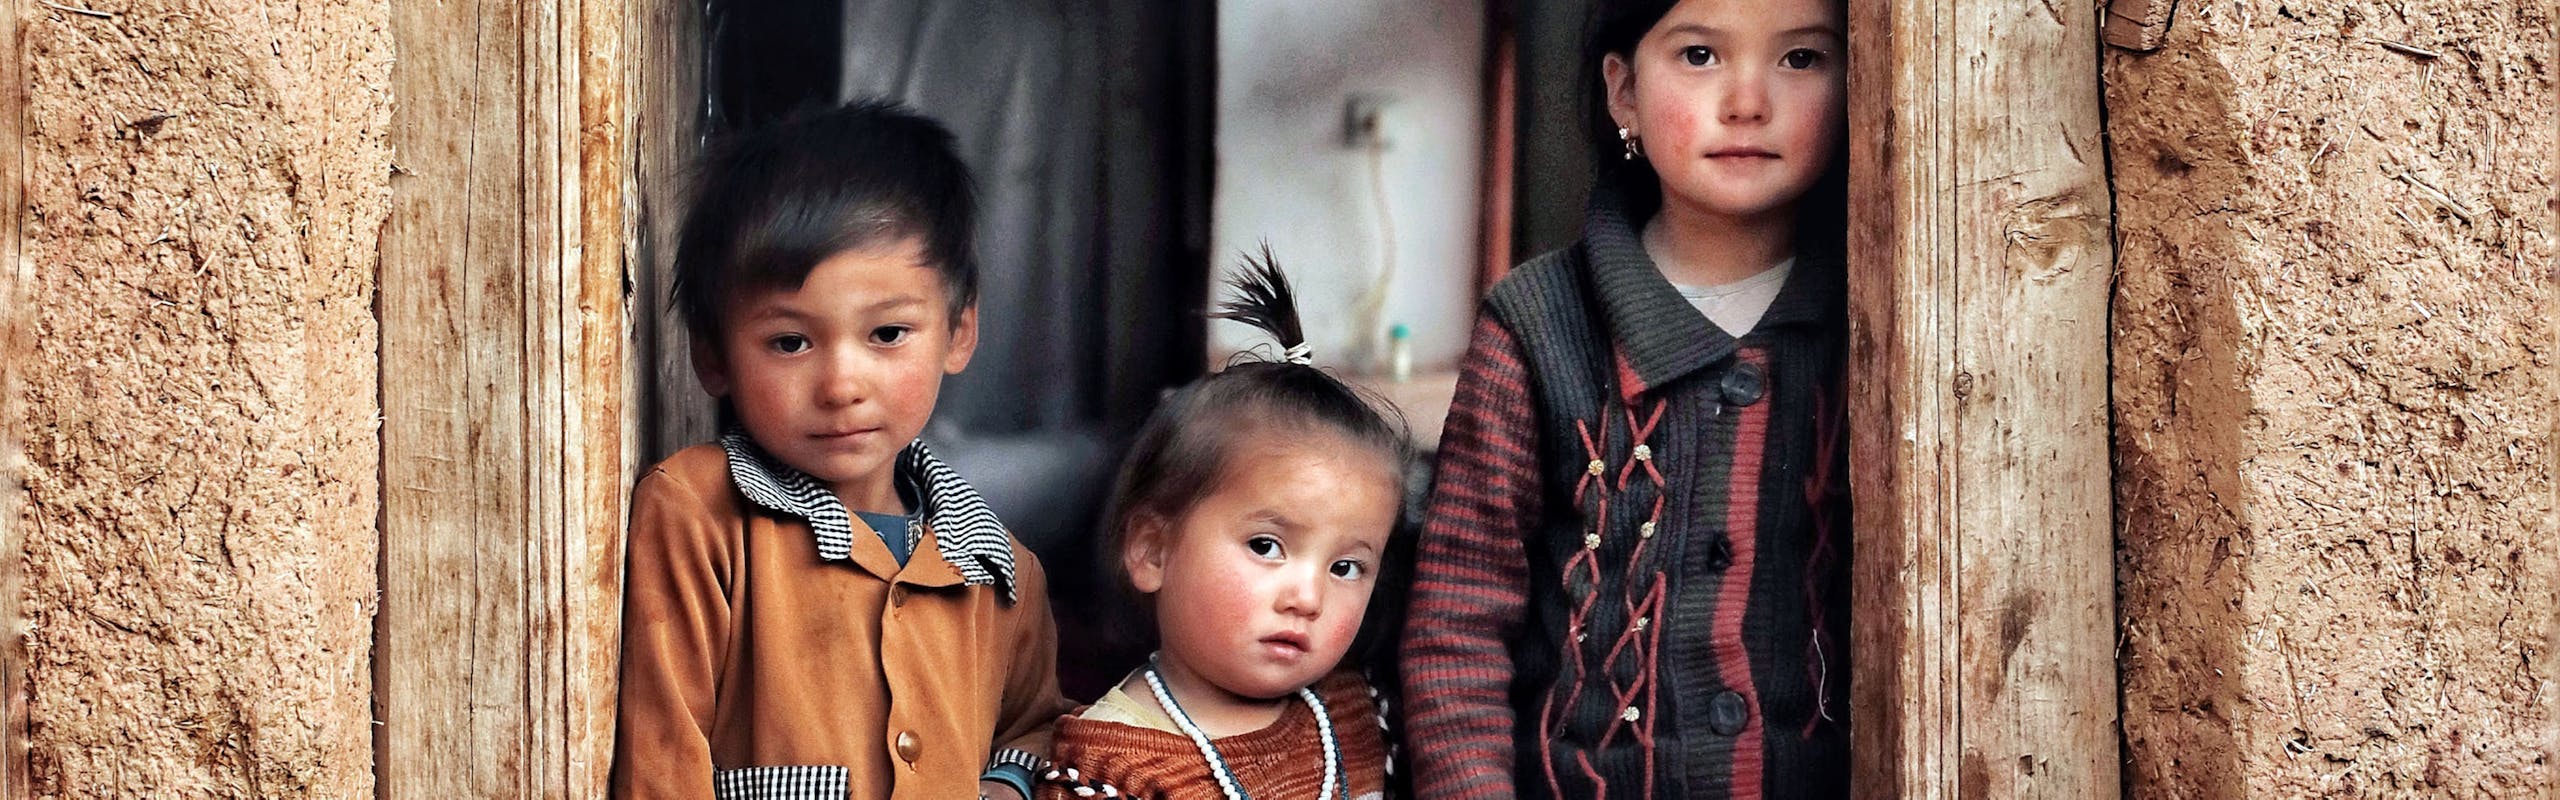 Bambini di Daykundi, 2020, foto di Roya Heydari